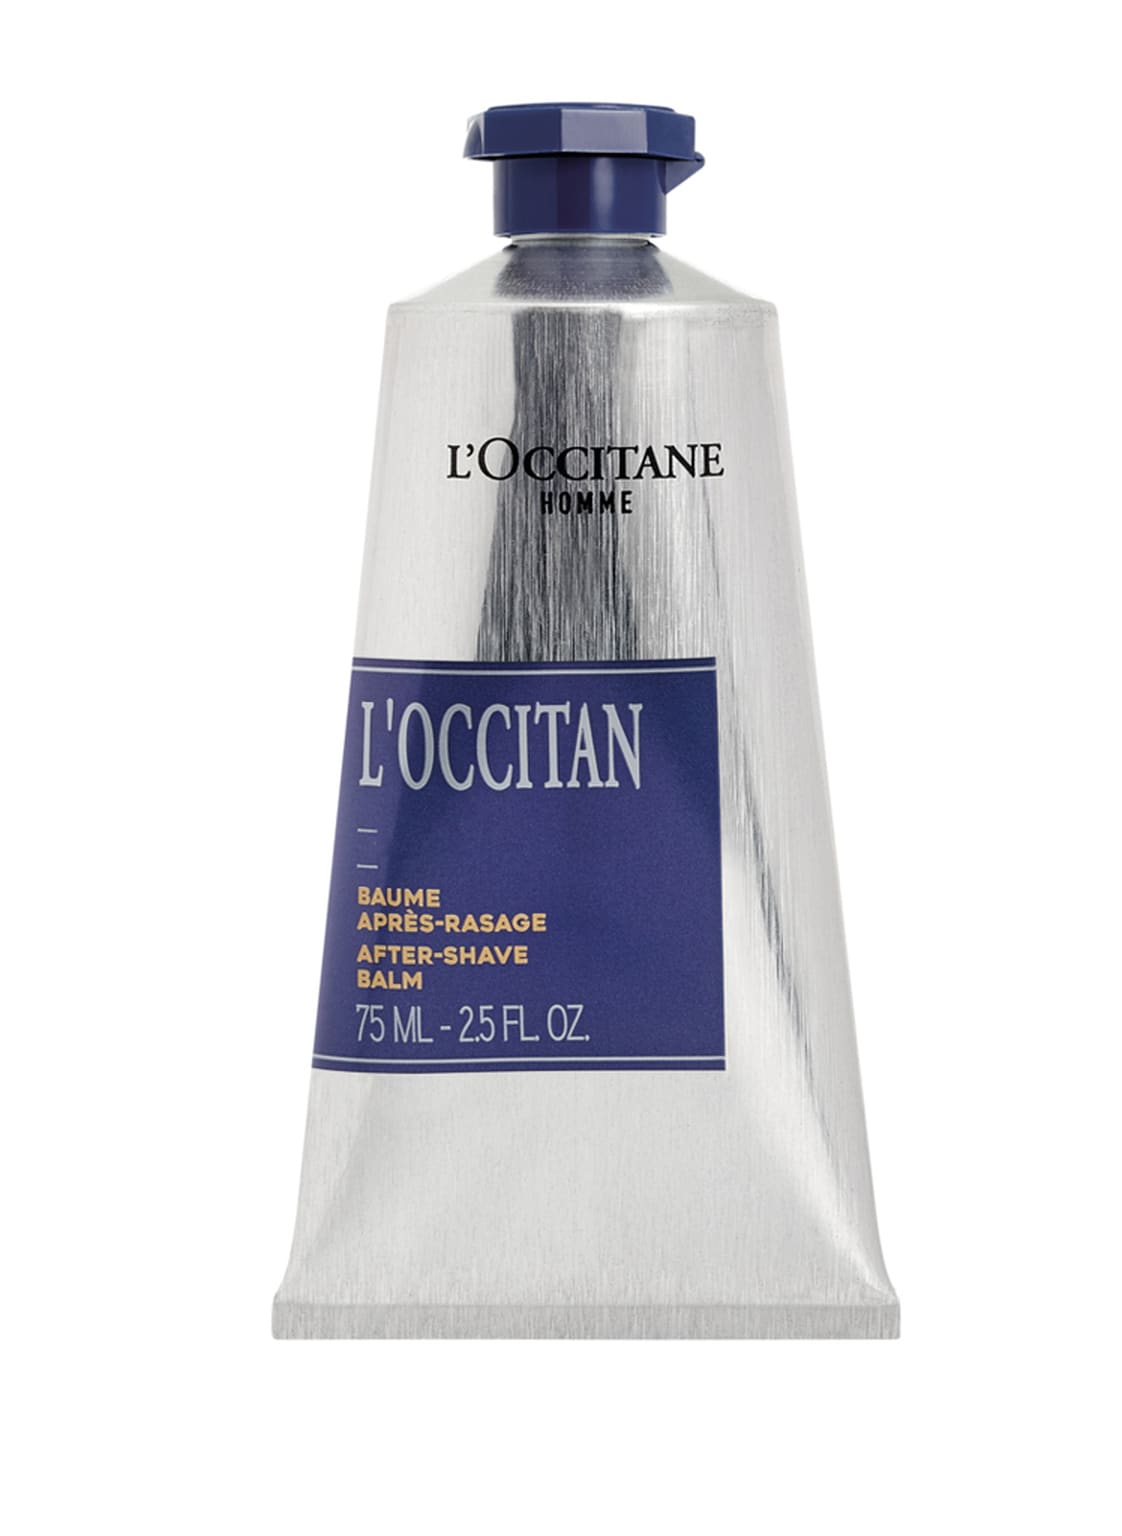 Image of L'occitane L'occitan After-Shave Balm 75 ml